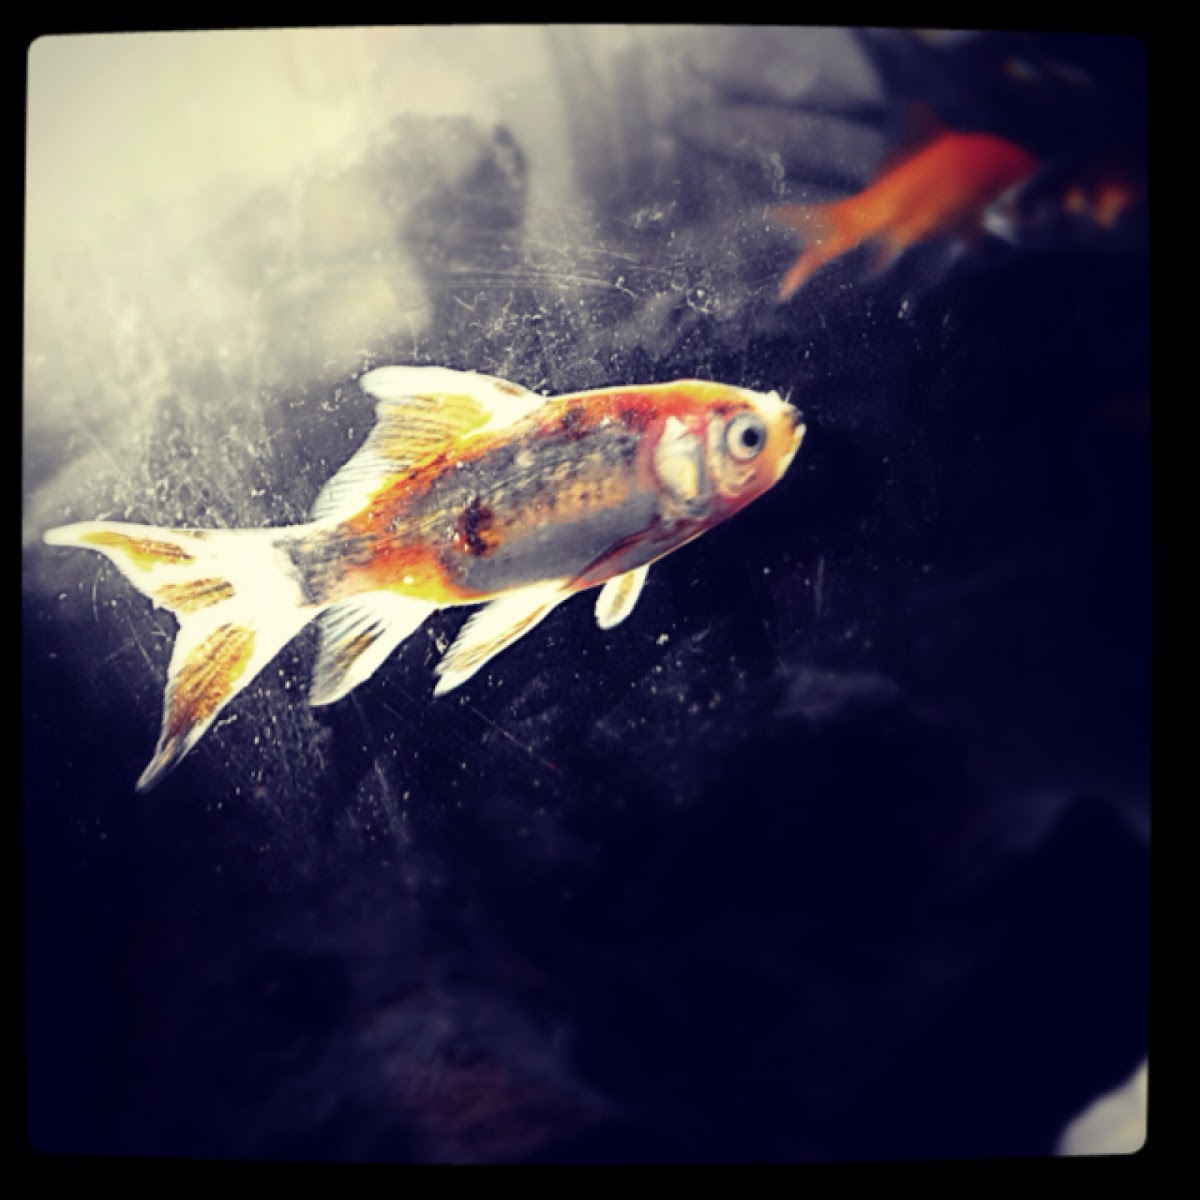 Shubunkin Goldfish